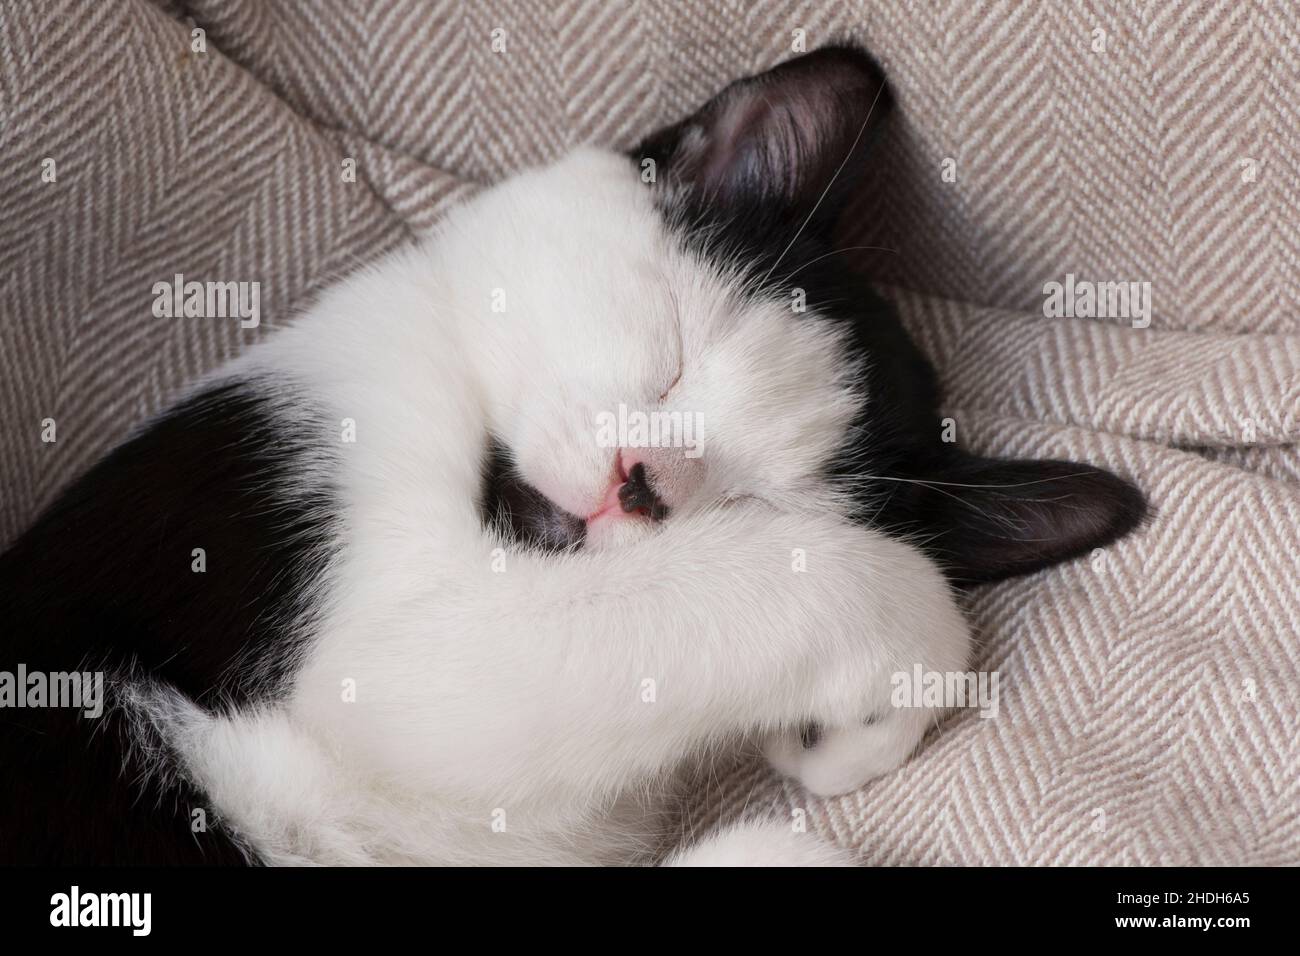 Niedliche schwarz-weiße Katze schläft mit Pfote über Gesicht, Kätzchen schlafen, ungewöhnliche Markierungen mit schwarzem Kinn, Stockfoto